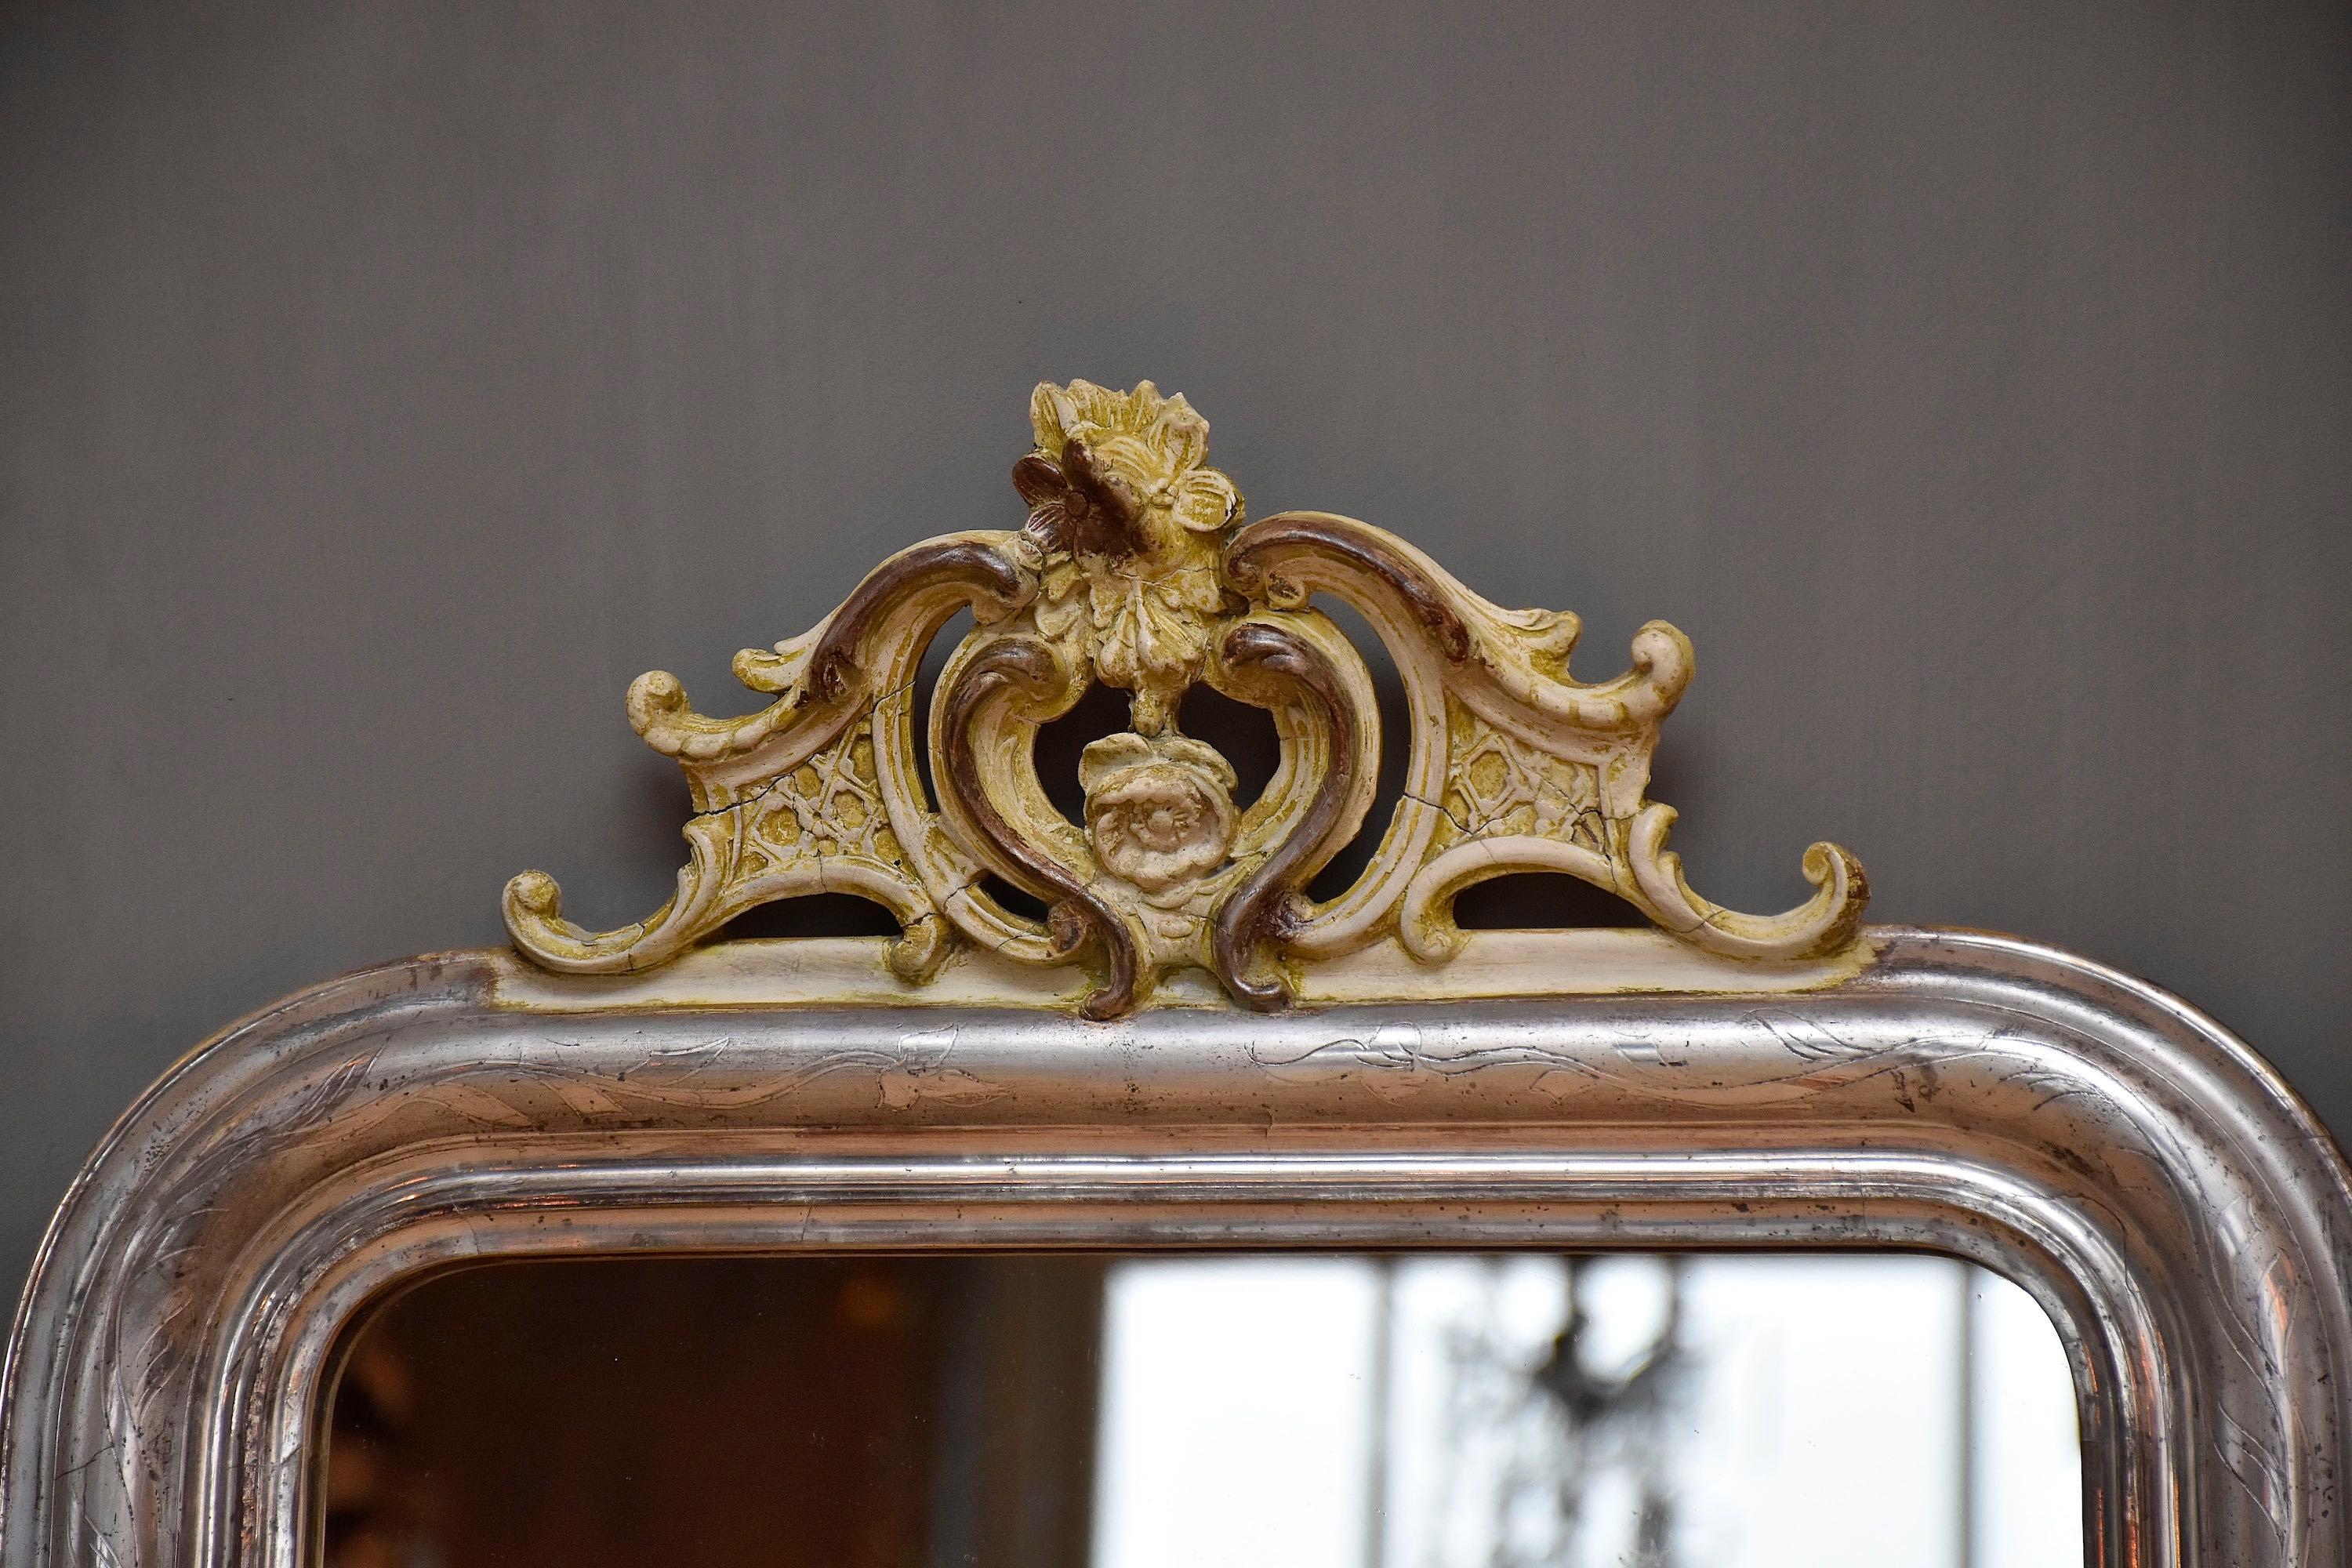 Un beau miroir français Louis-Philippe avec une jolie crête décorative.
Le cadre est doré à la feuille d'argent et gravé de fleurs et de feuilles.
Le verre est d'origine, antique.
Le miroir a un dos en bois d'origine.
Ce miroir est en très bon état !